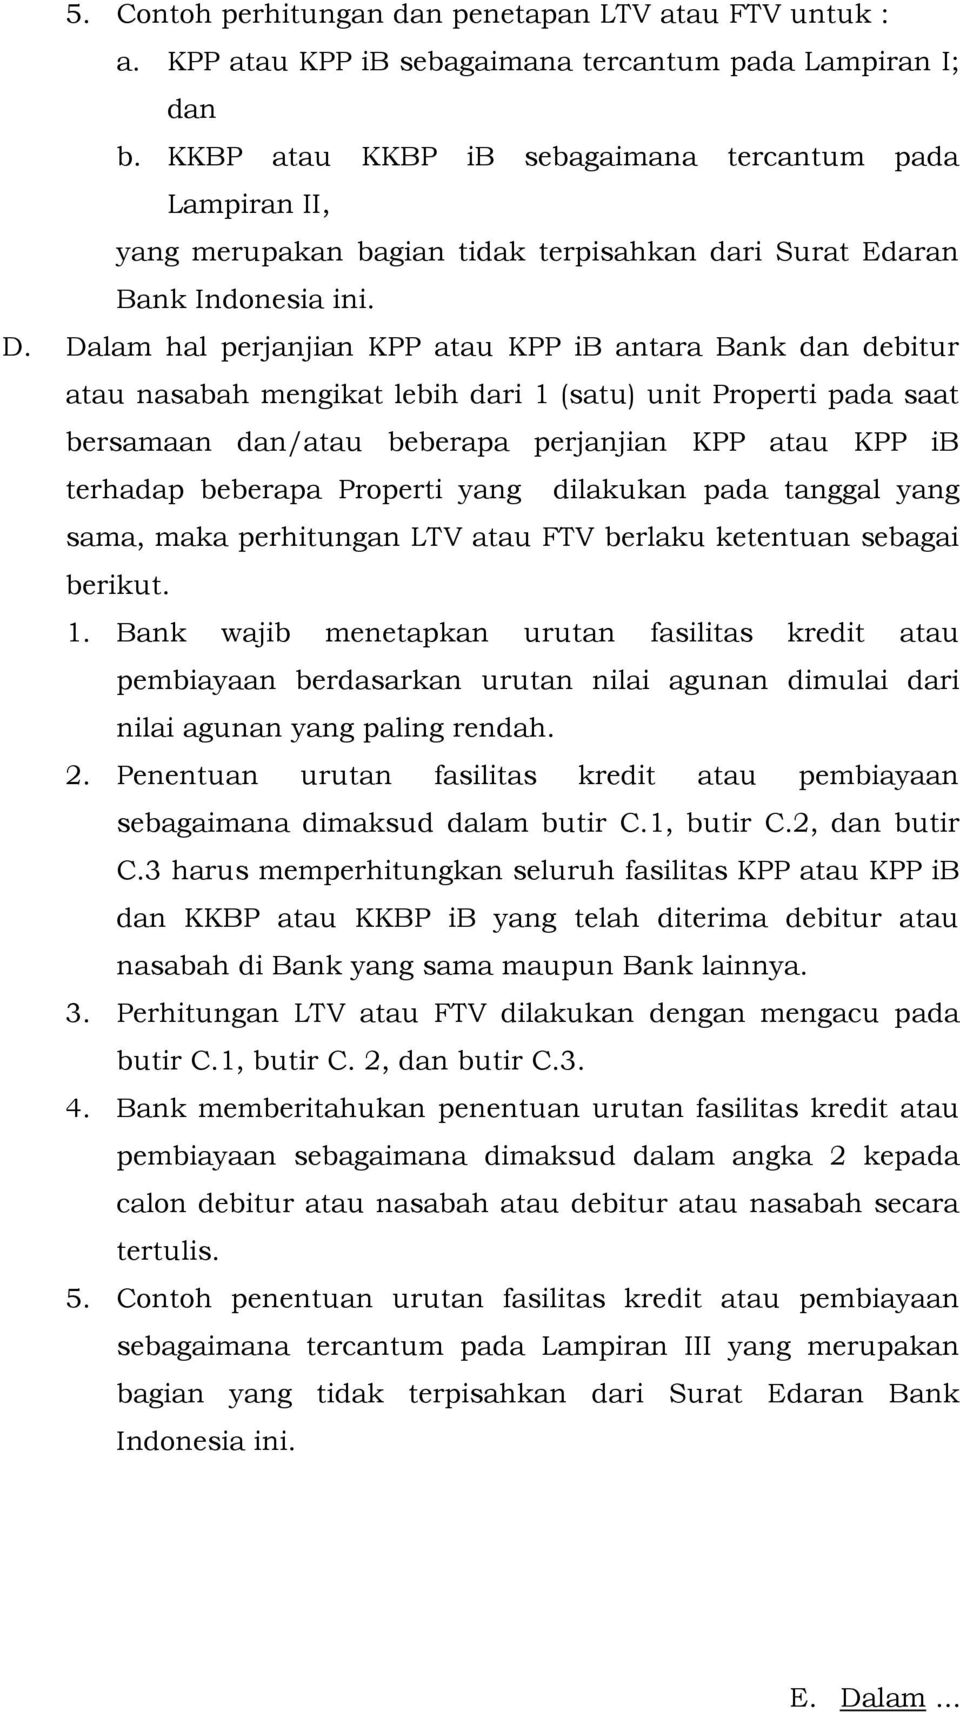 Dalam hal perjanjian KPP atau KPP ib antara Bank dan debitur atau nasabah mengikat lebih dari 1 (satu) unit Properti pada saat bersamaan dan/atau beberapa perjanjian KPP atau KPP ib terhadap beberapa